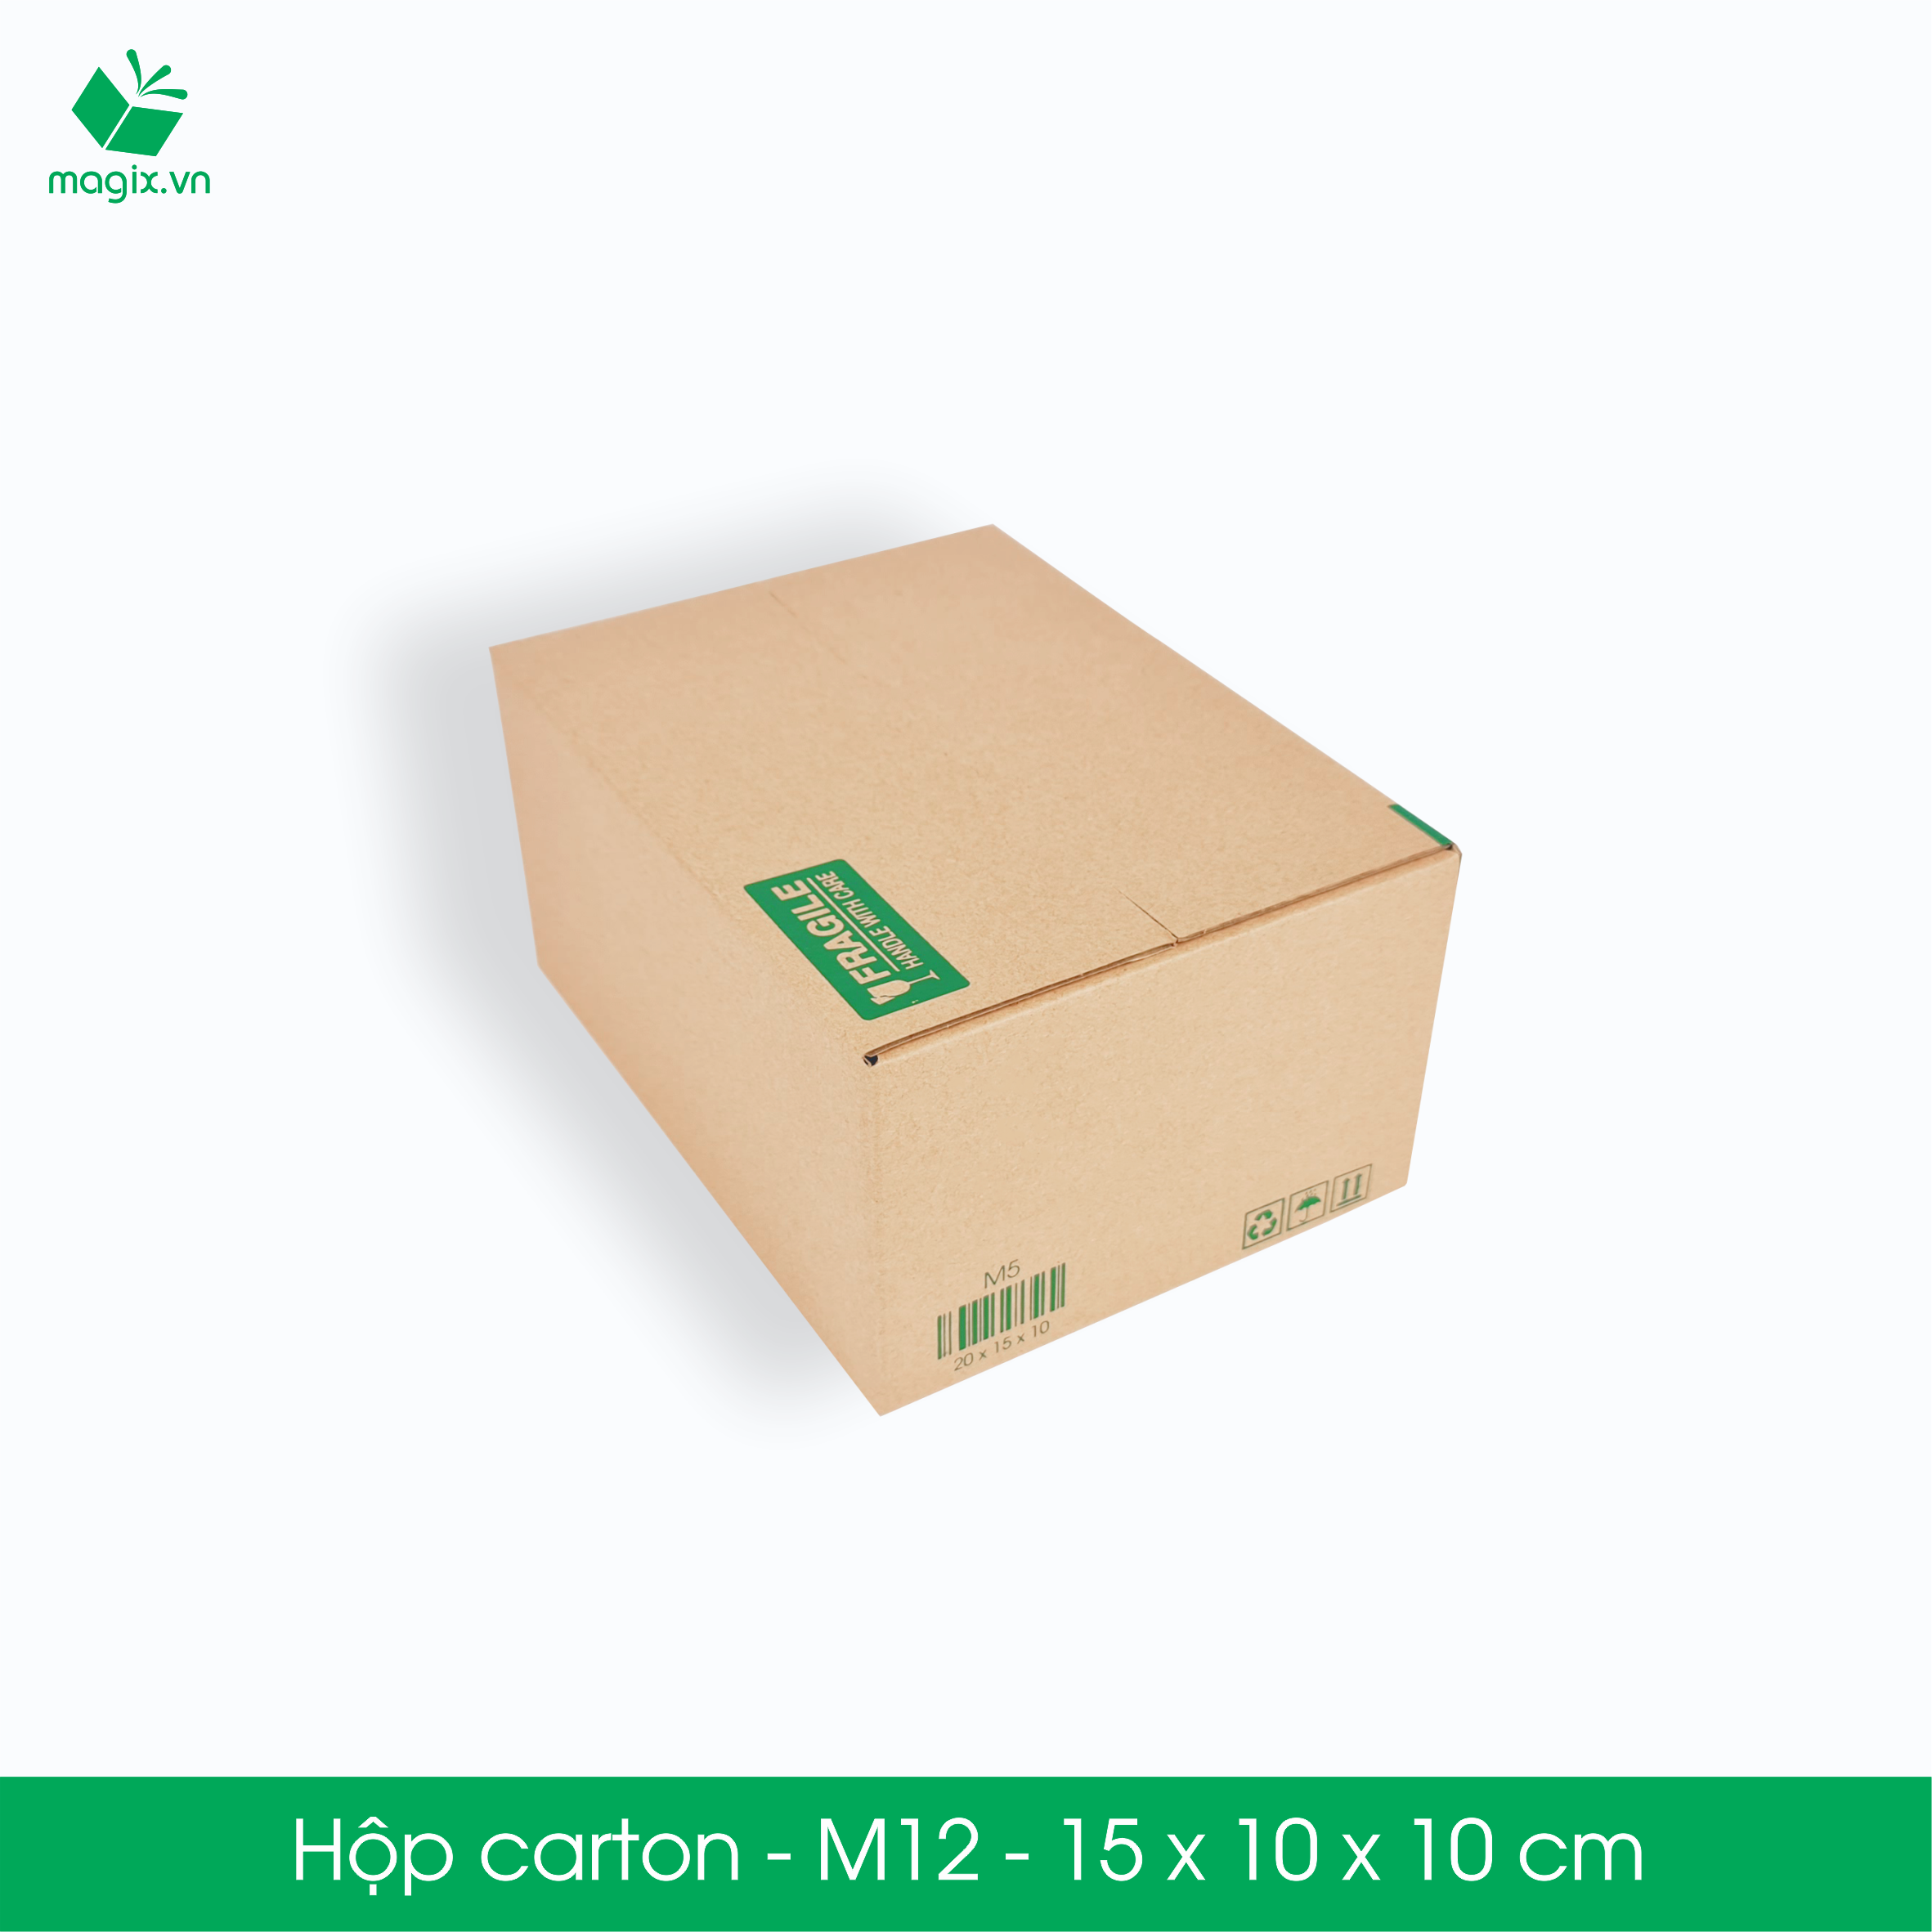 M12 - 15x10x10 cm - 60 Thùng hộp carton